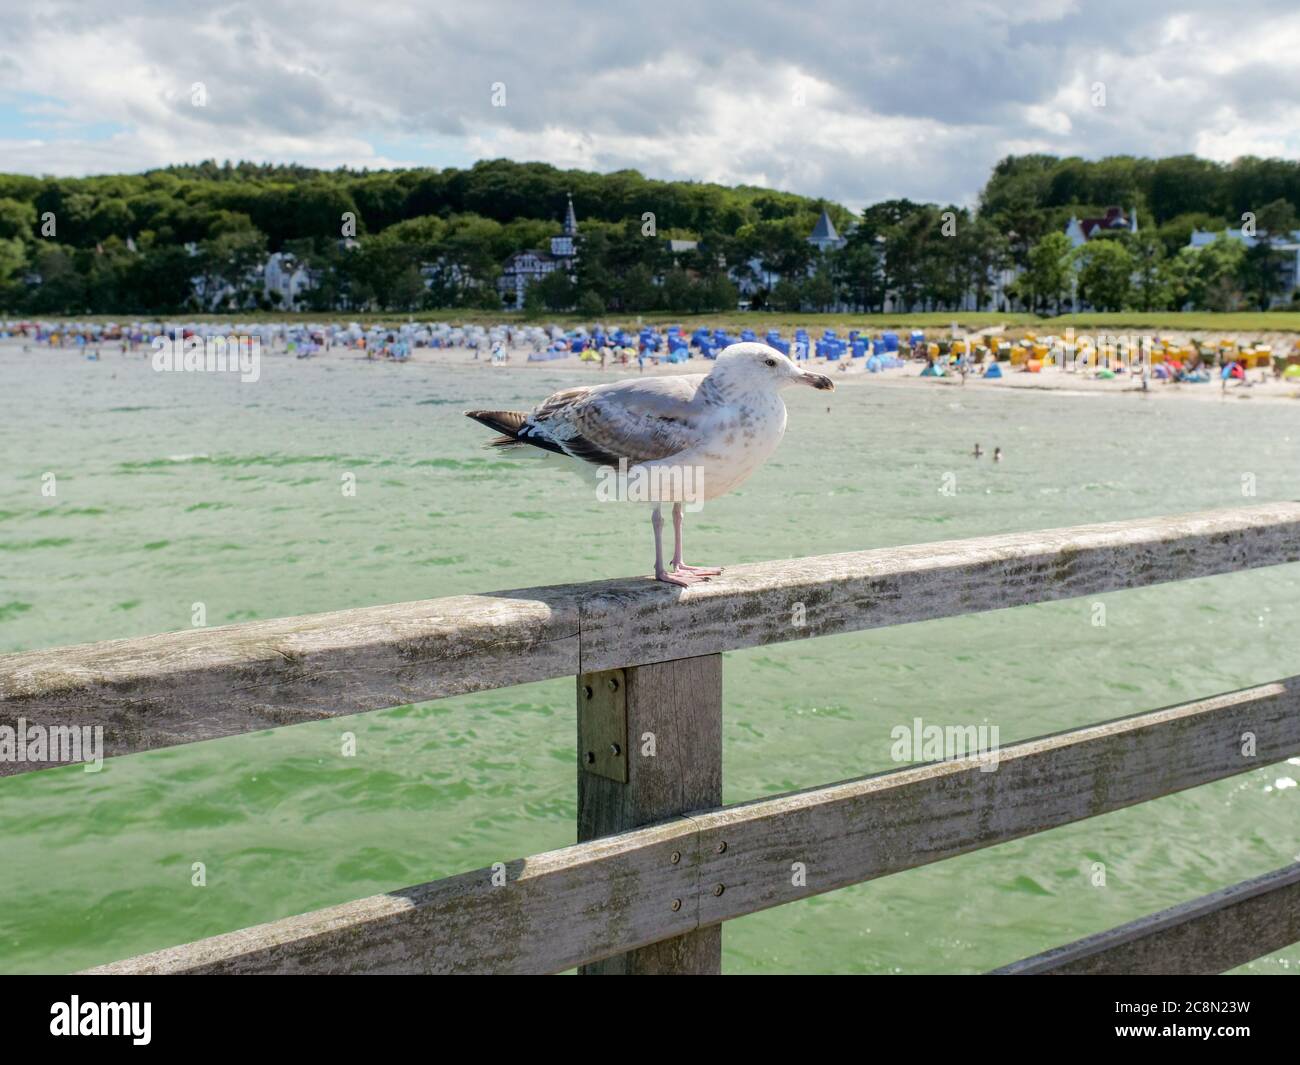 weiß-graue Möwe auf der Seebrücke in Binz wartend und beobachtend Eismöwe Ostsee Insel Rügen mit Strand und Touristen im Hintergrund Stock Photo